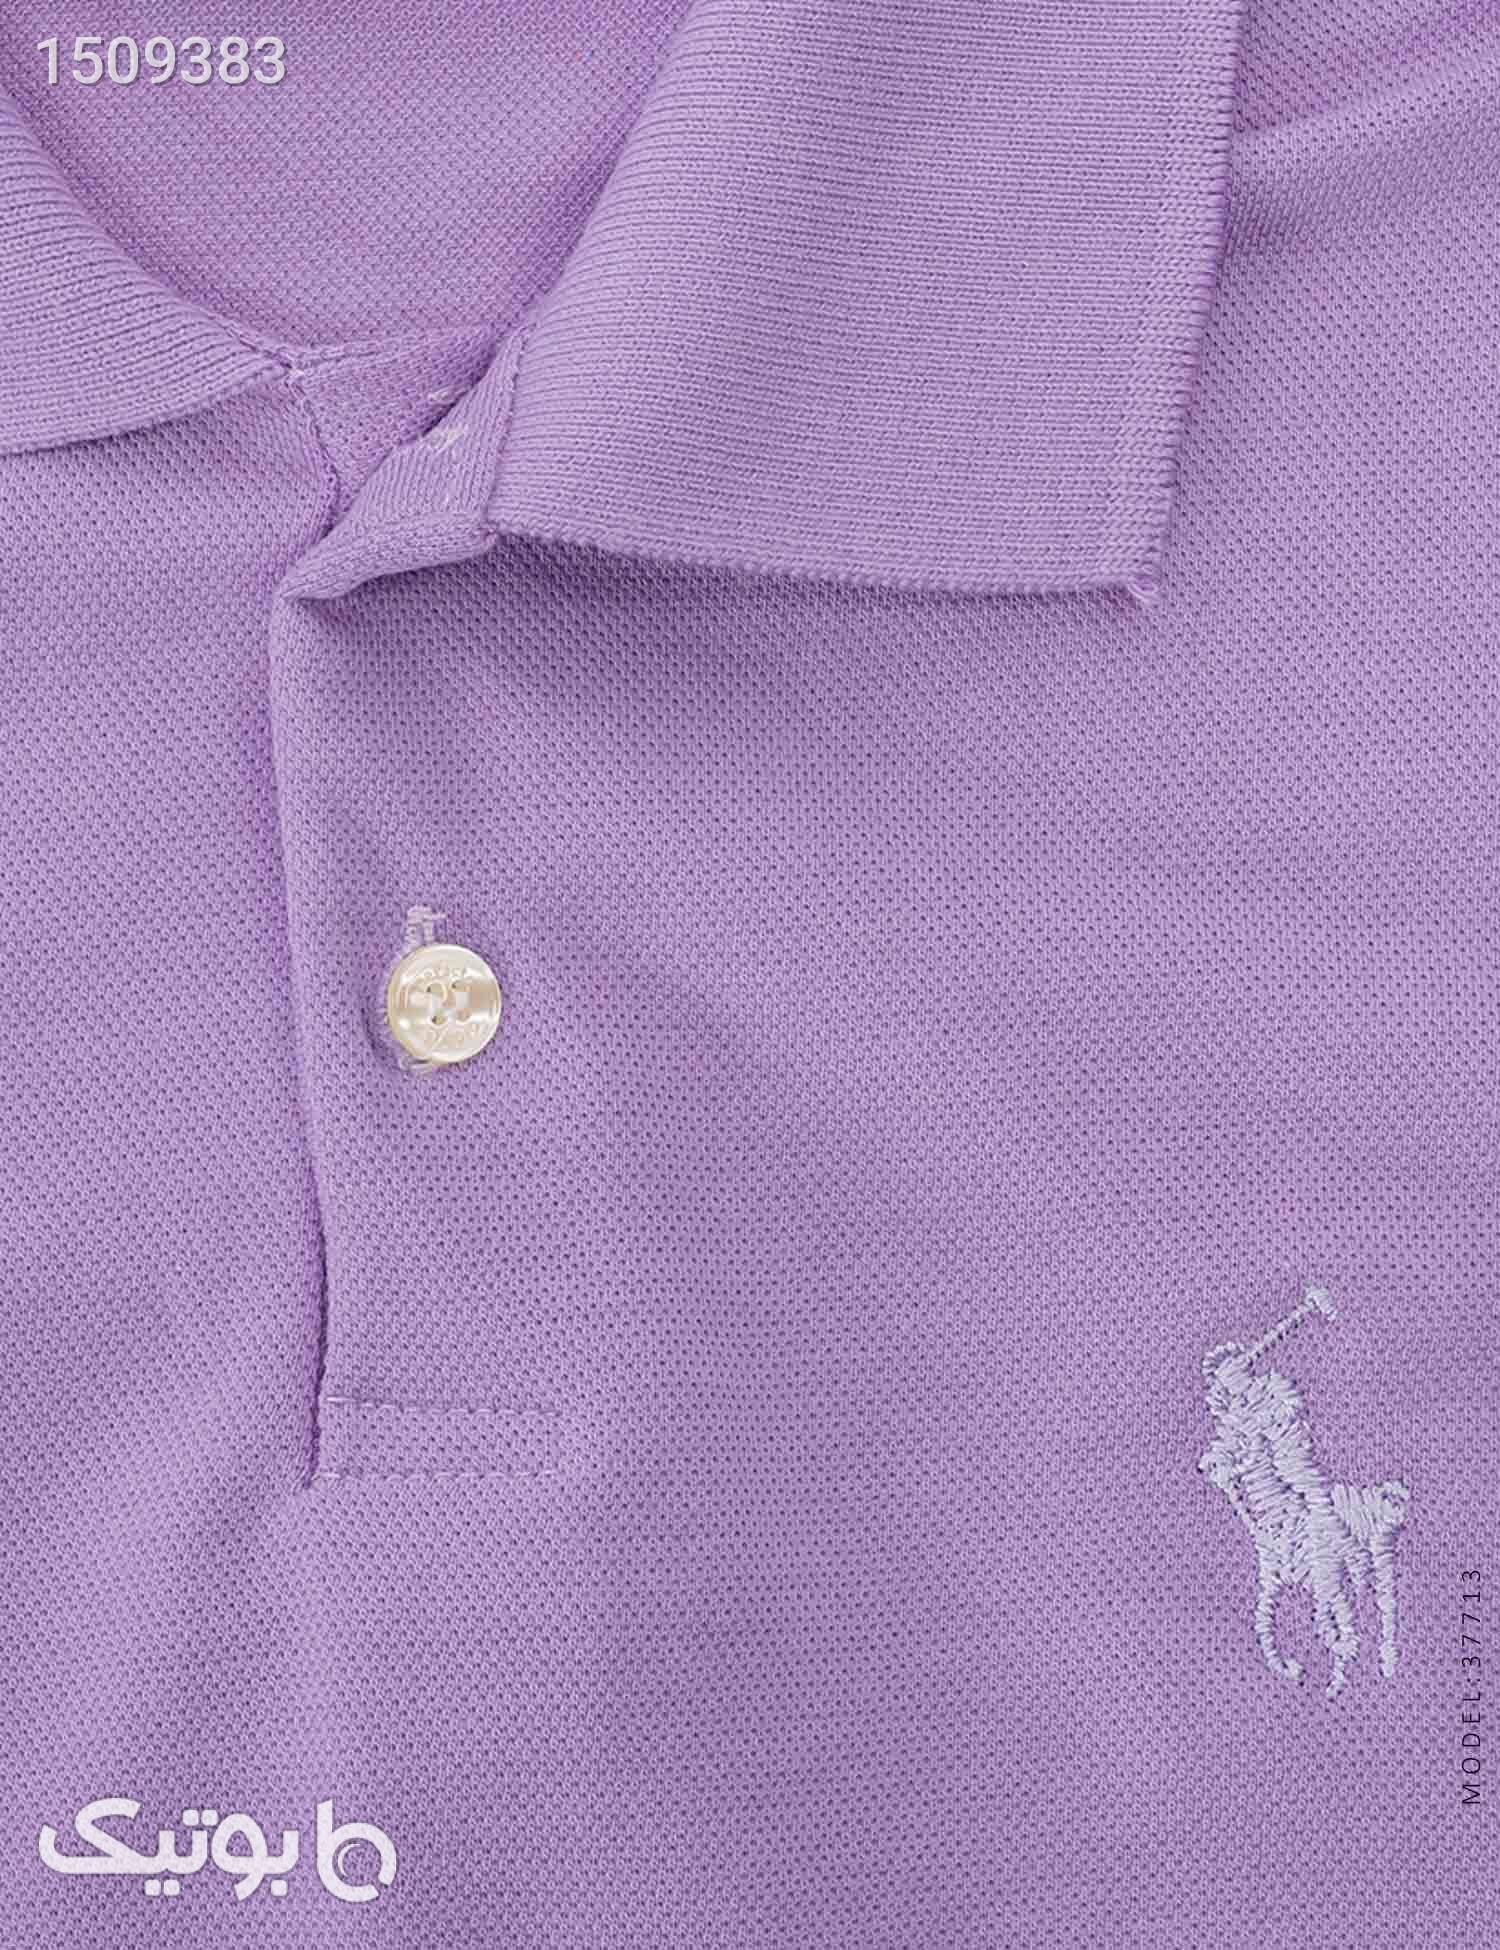 پولوشرت مردانه Polo مدل 37713 بنفش تی شرت و پولو شرت مردانه